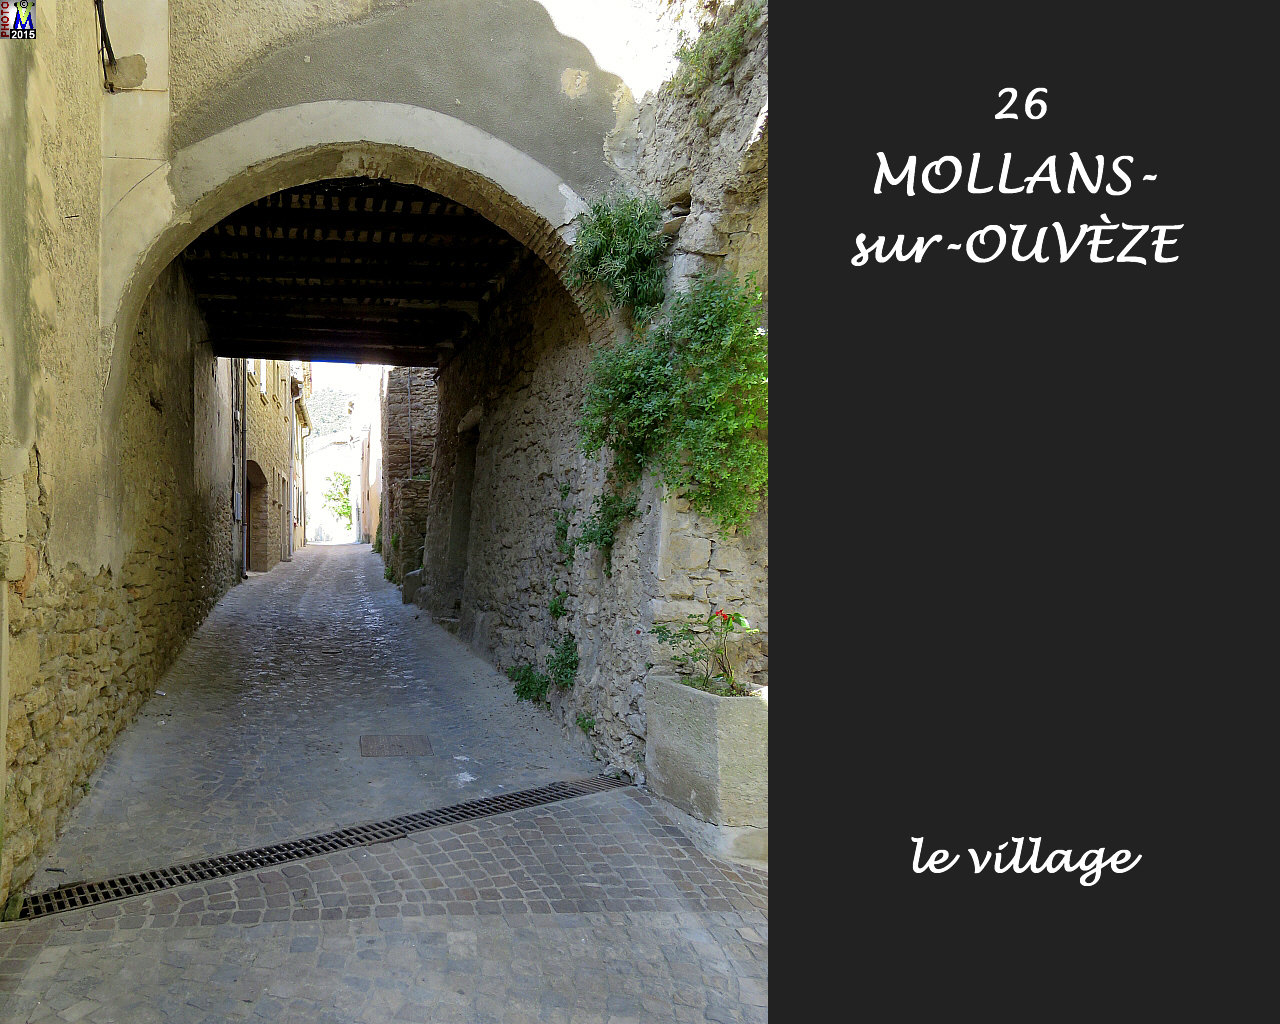 26MOLLANS-OUVEZE_village_124.jpg